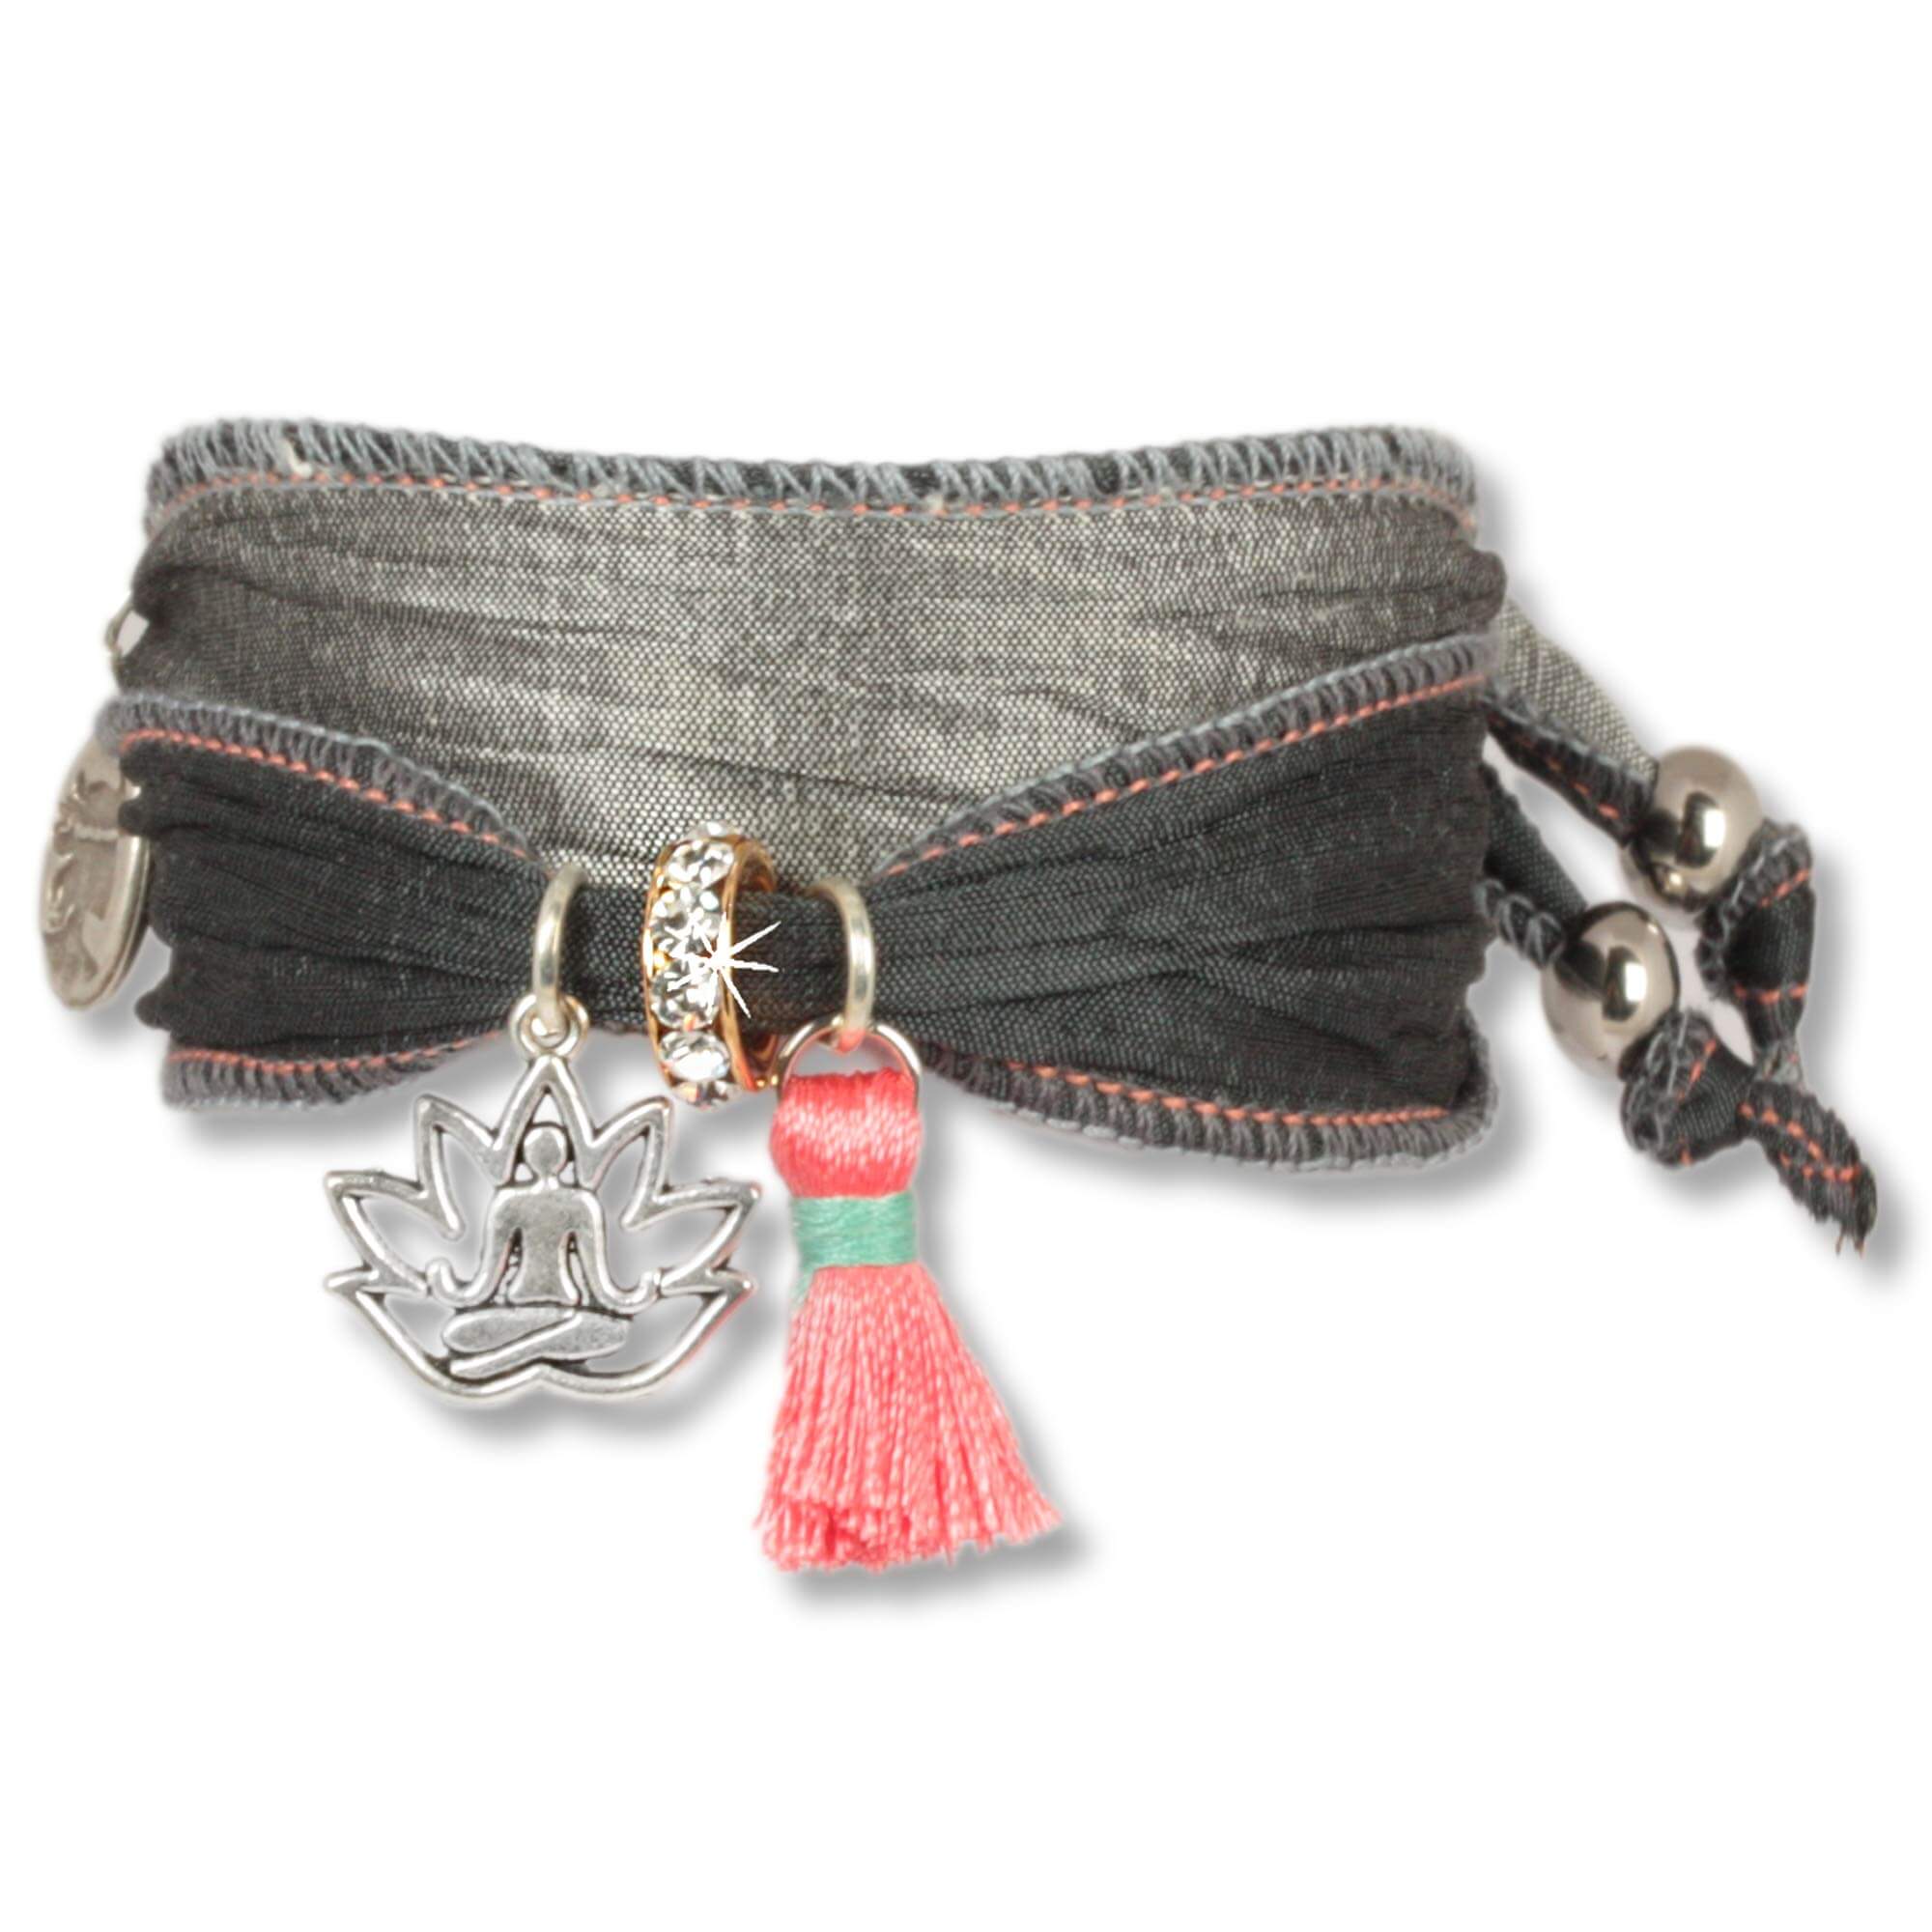 Armband aus Sari's und Seidenstoffen in Schwarz, Anthrazit, Silber mit Lotusanhänger, rosafarbenen Quaste und einem Rondell besetzt mit tschechischen Kristallen